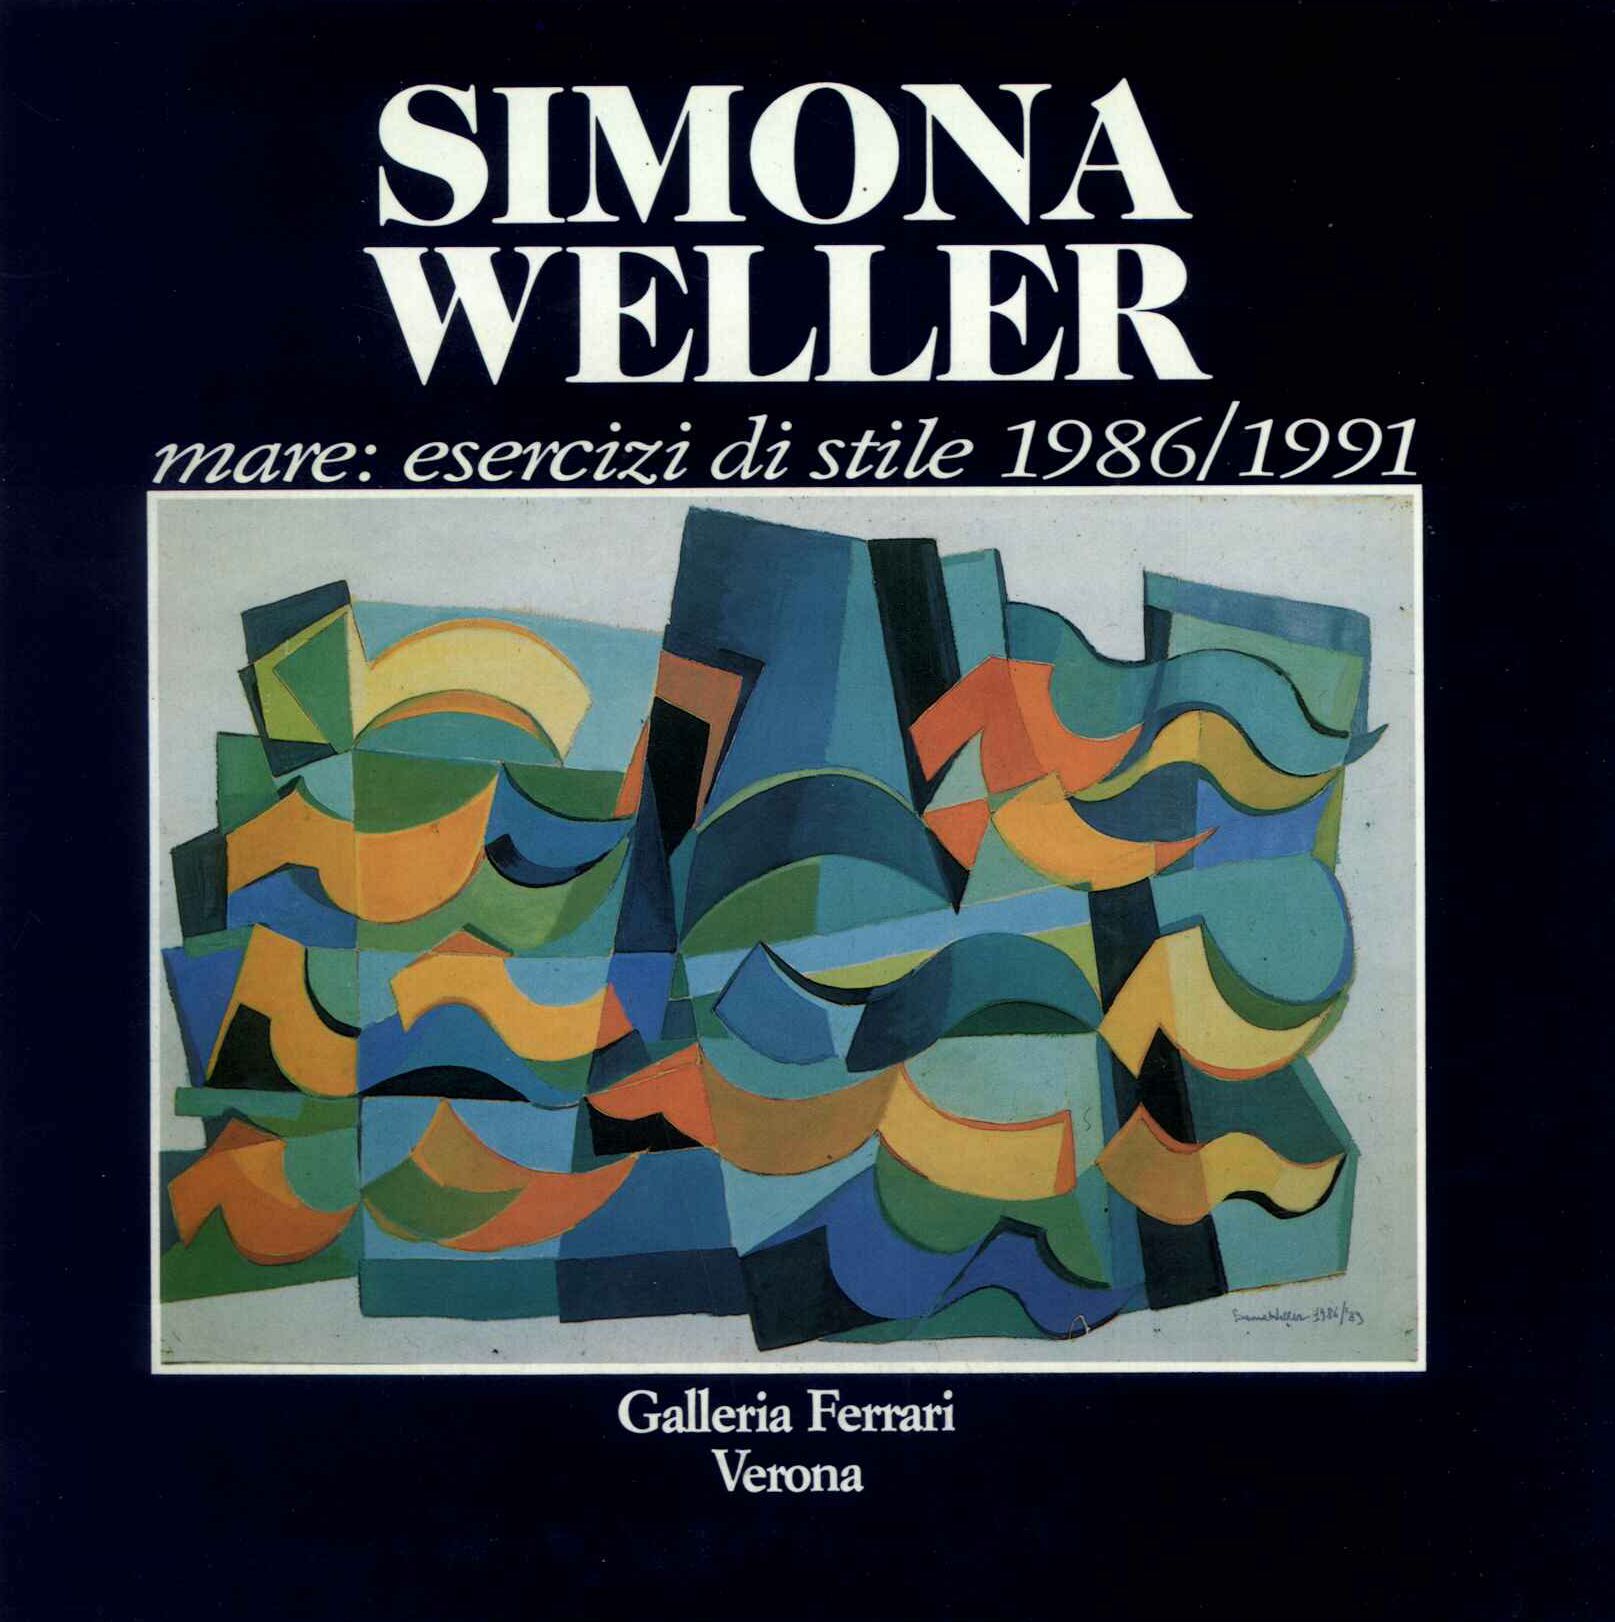 Simona Weller, mare: eserczi di stile 1986/1991